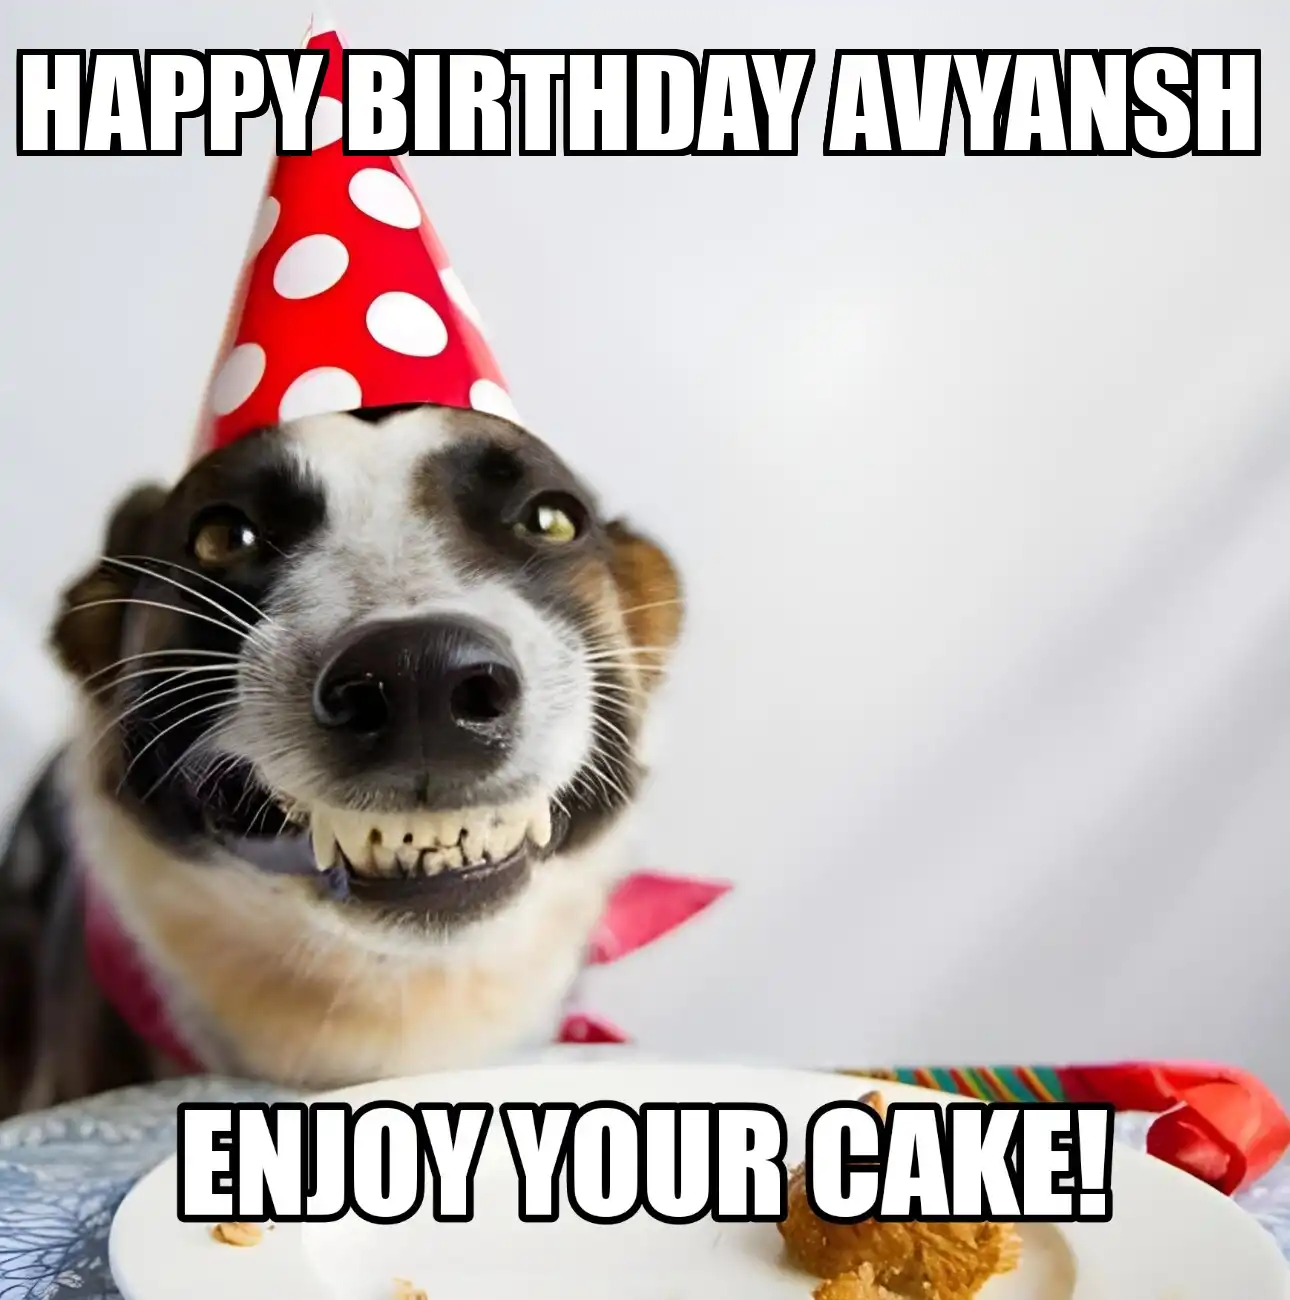 Happy Birthday Avyansh Enjoy Your Cake Dog Meme